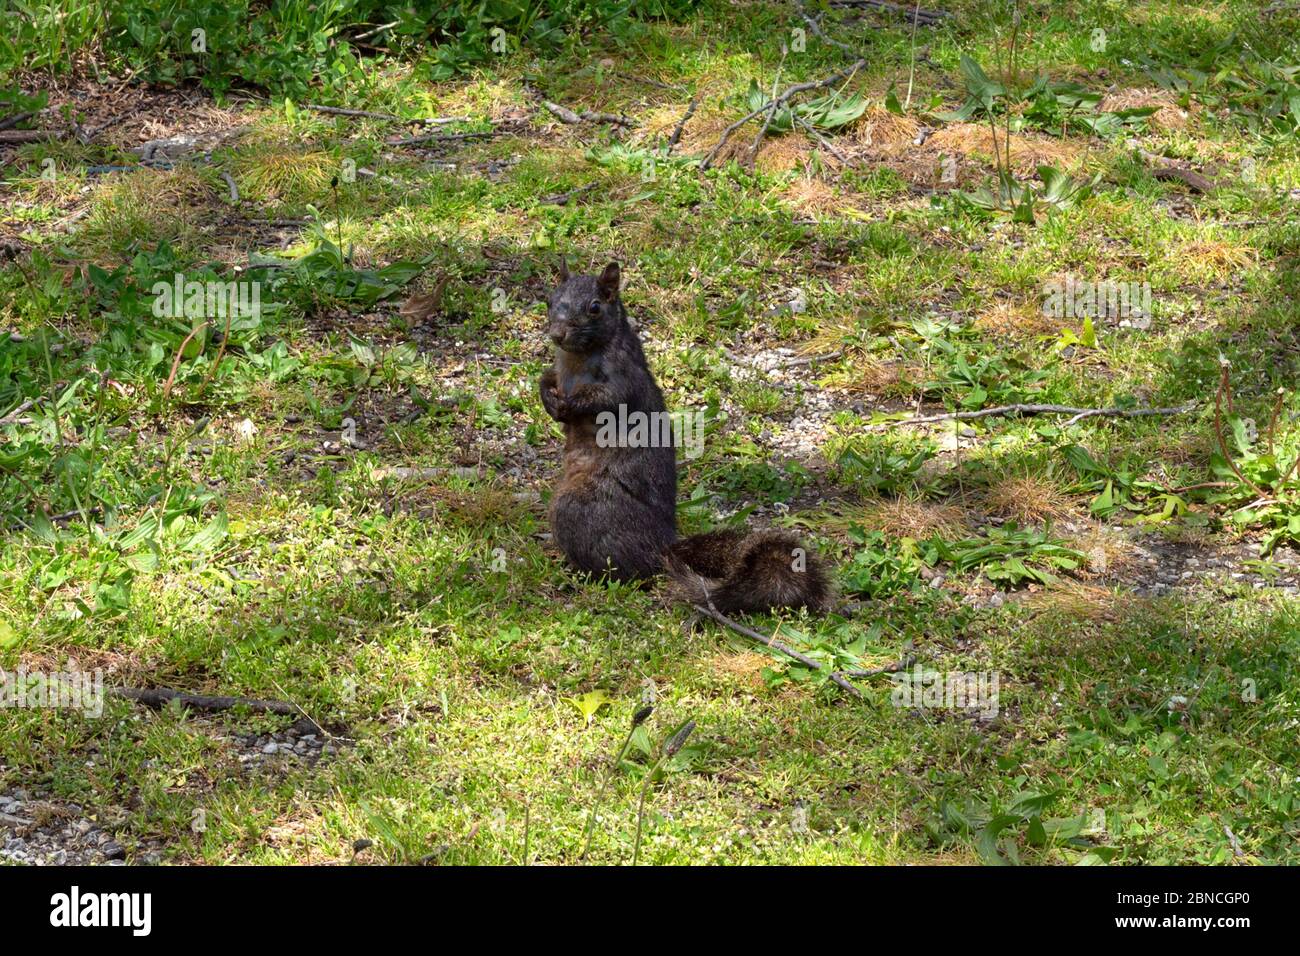 Ein schwarzes Eichhörnchen sitzt auf seinen Hinterbeinen in einem Grasfleck und schaut direkt auf die Kamera Stockfoto